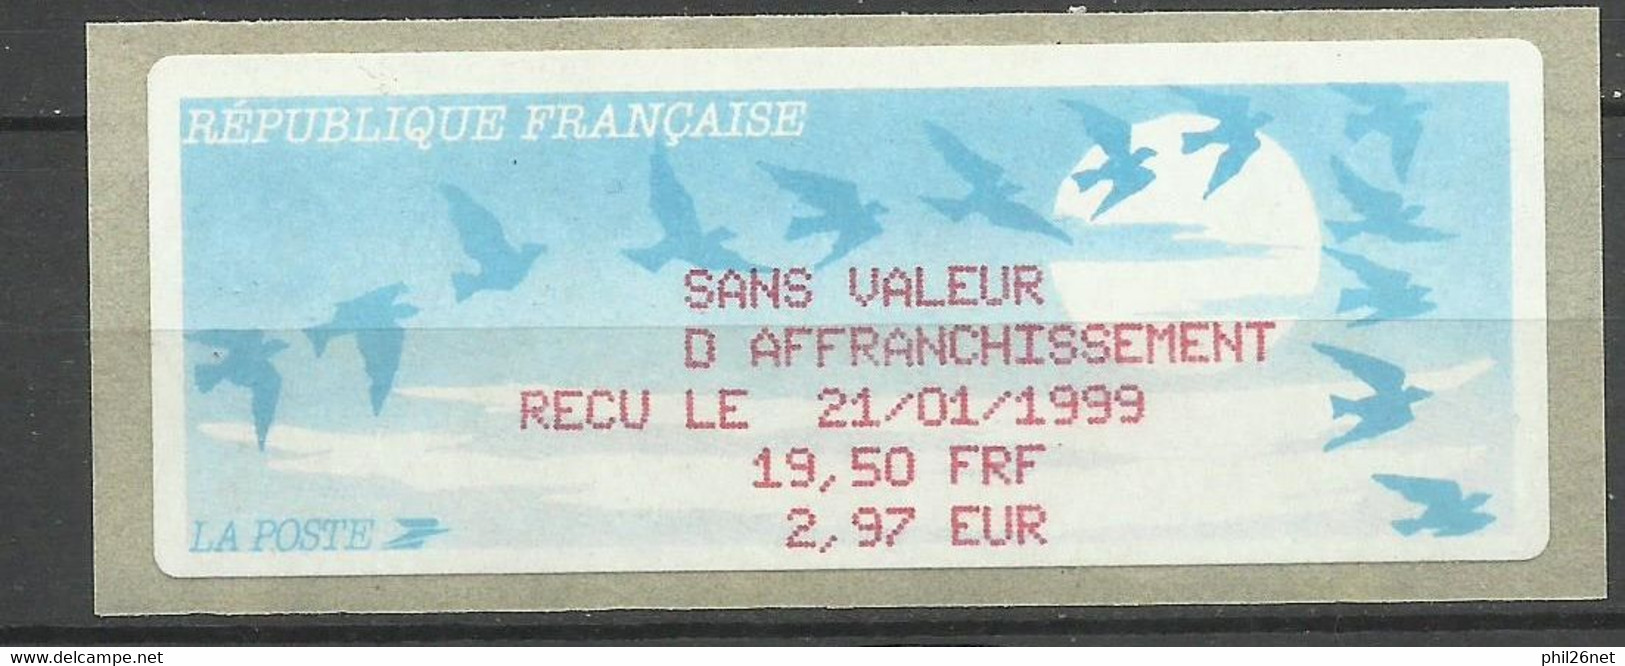 Vignette D'affranchissement Oiseaux De Jubert  Reçu 19,50Fn= 2,97 € Le 21/01/1999   Neuf  B/TB Voir Scan Soldé - 1990 « Oiseaux De Jubert »